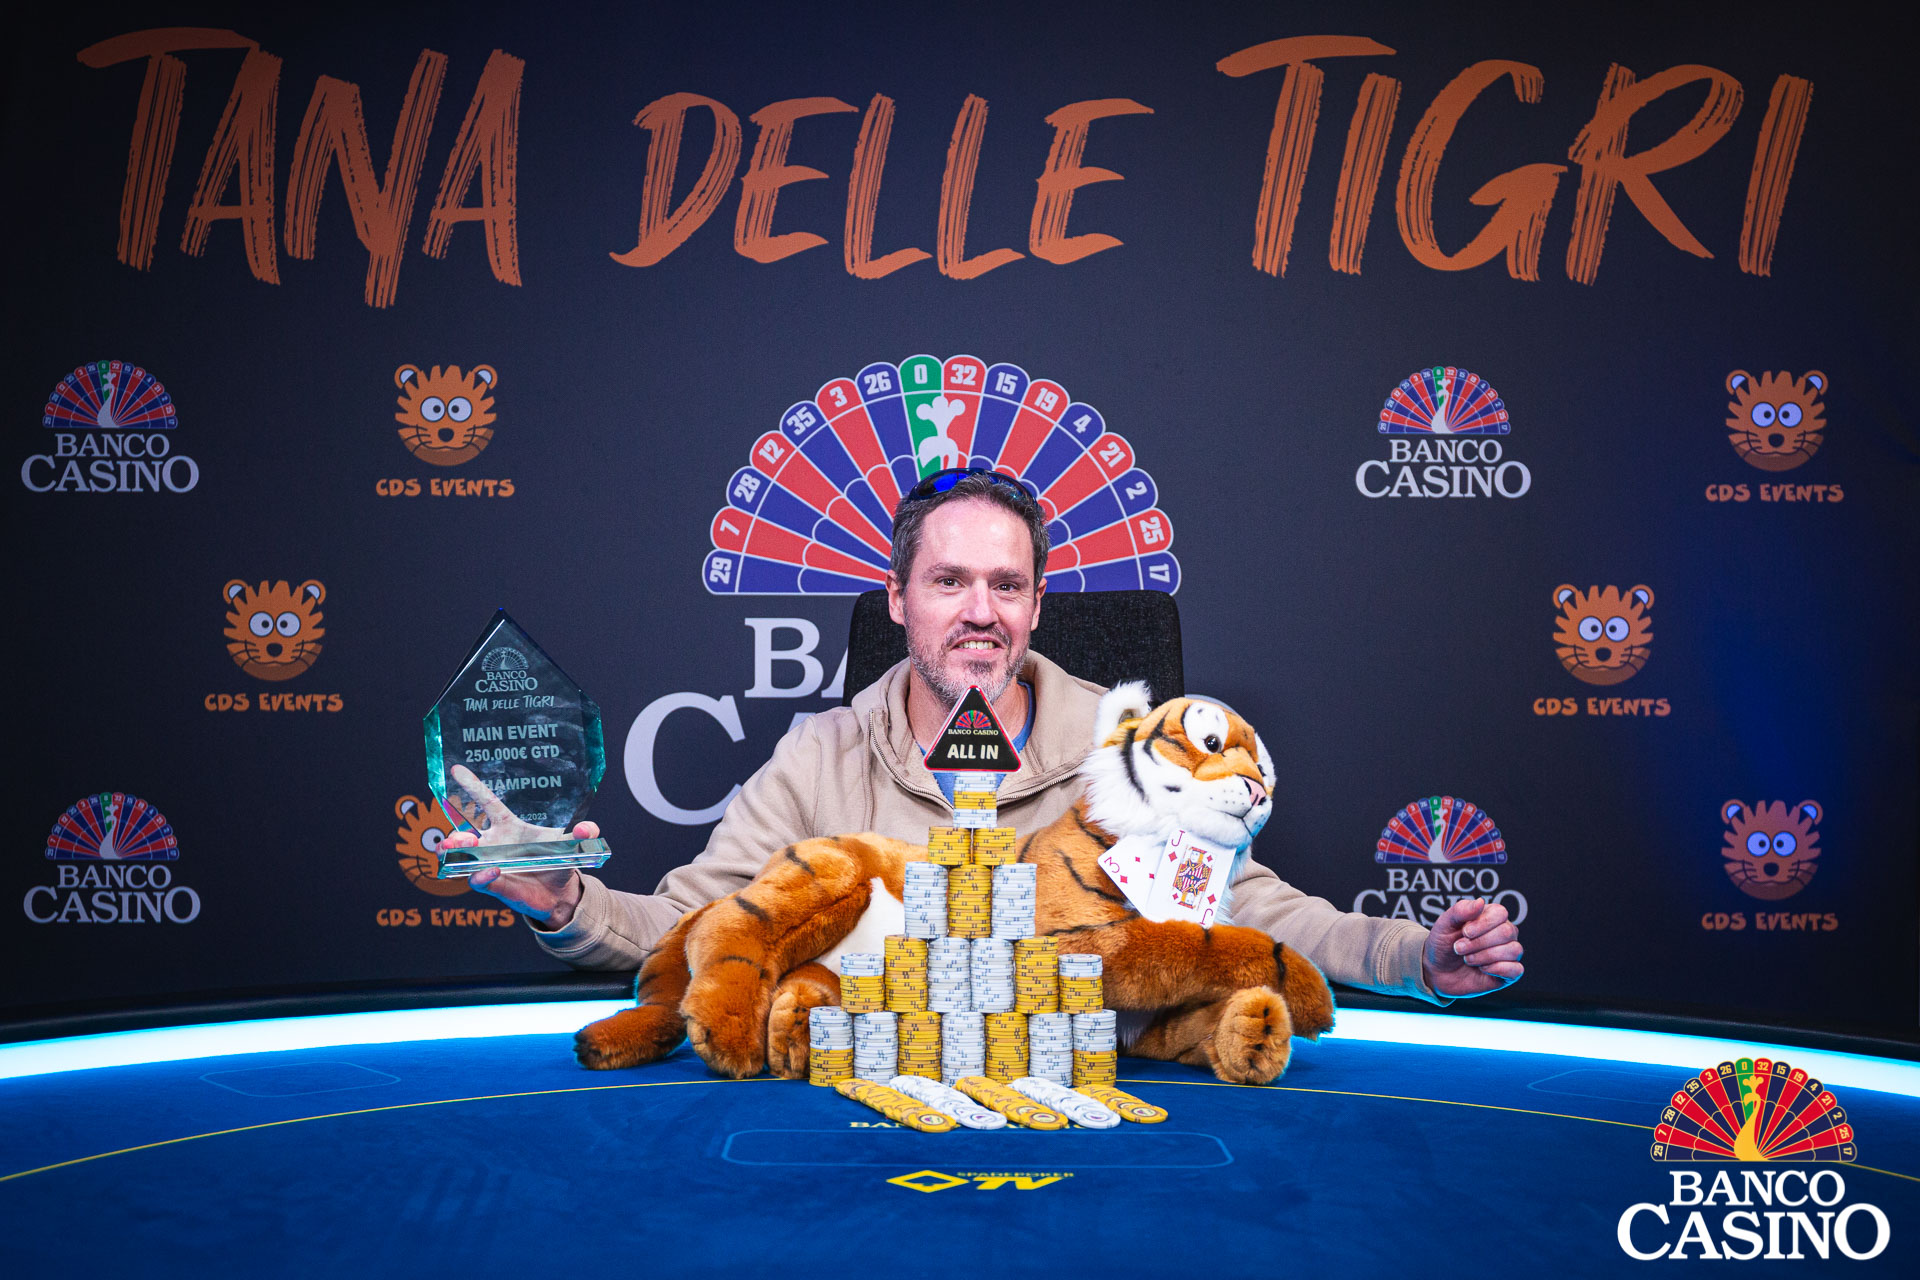 Šampiónom talianskeho Tana delle Tigri sa stáva Gani Weiss a odnáša si z Banco Casino 27.000€!